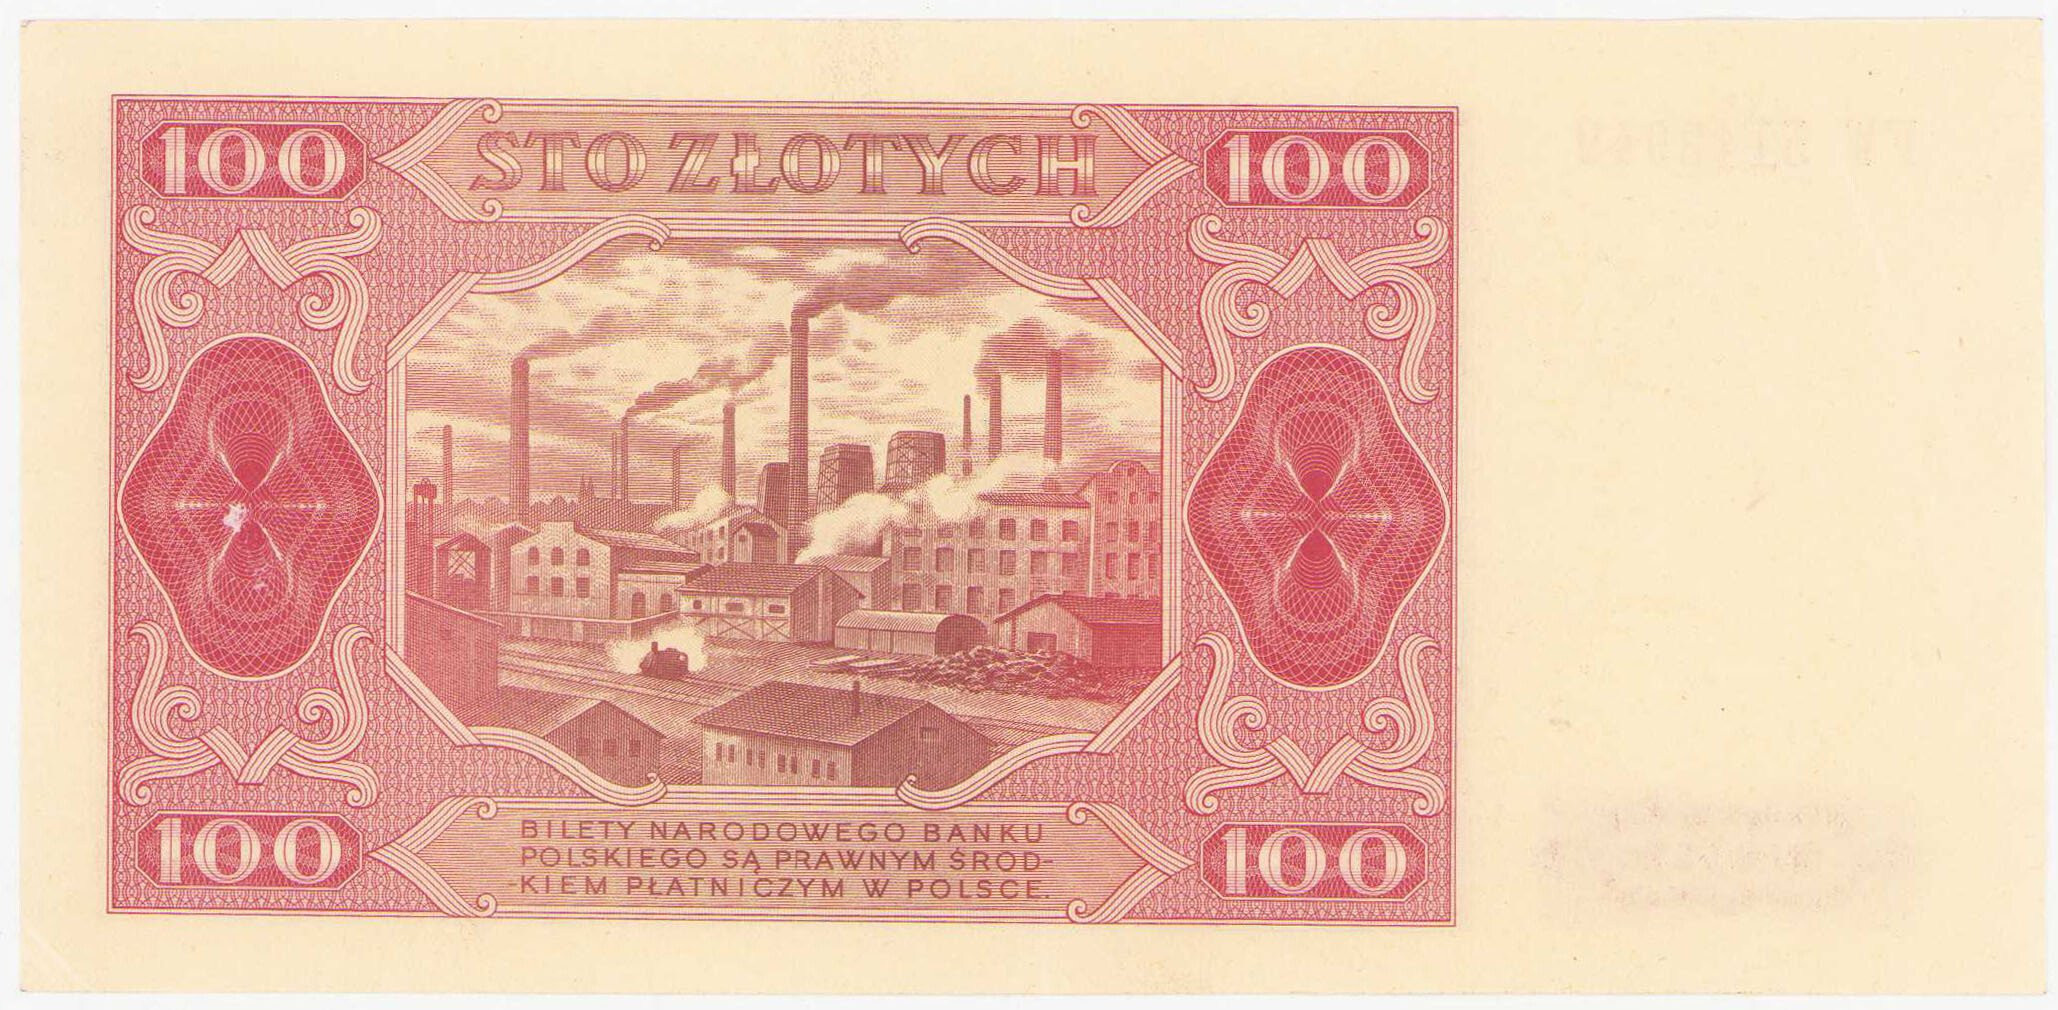 100 złotych 1948 seria FW - rzadsza odmiana bez ramki